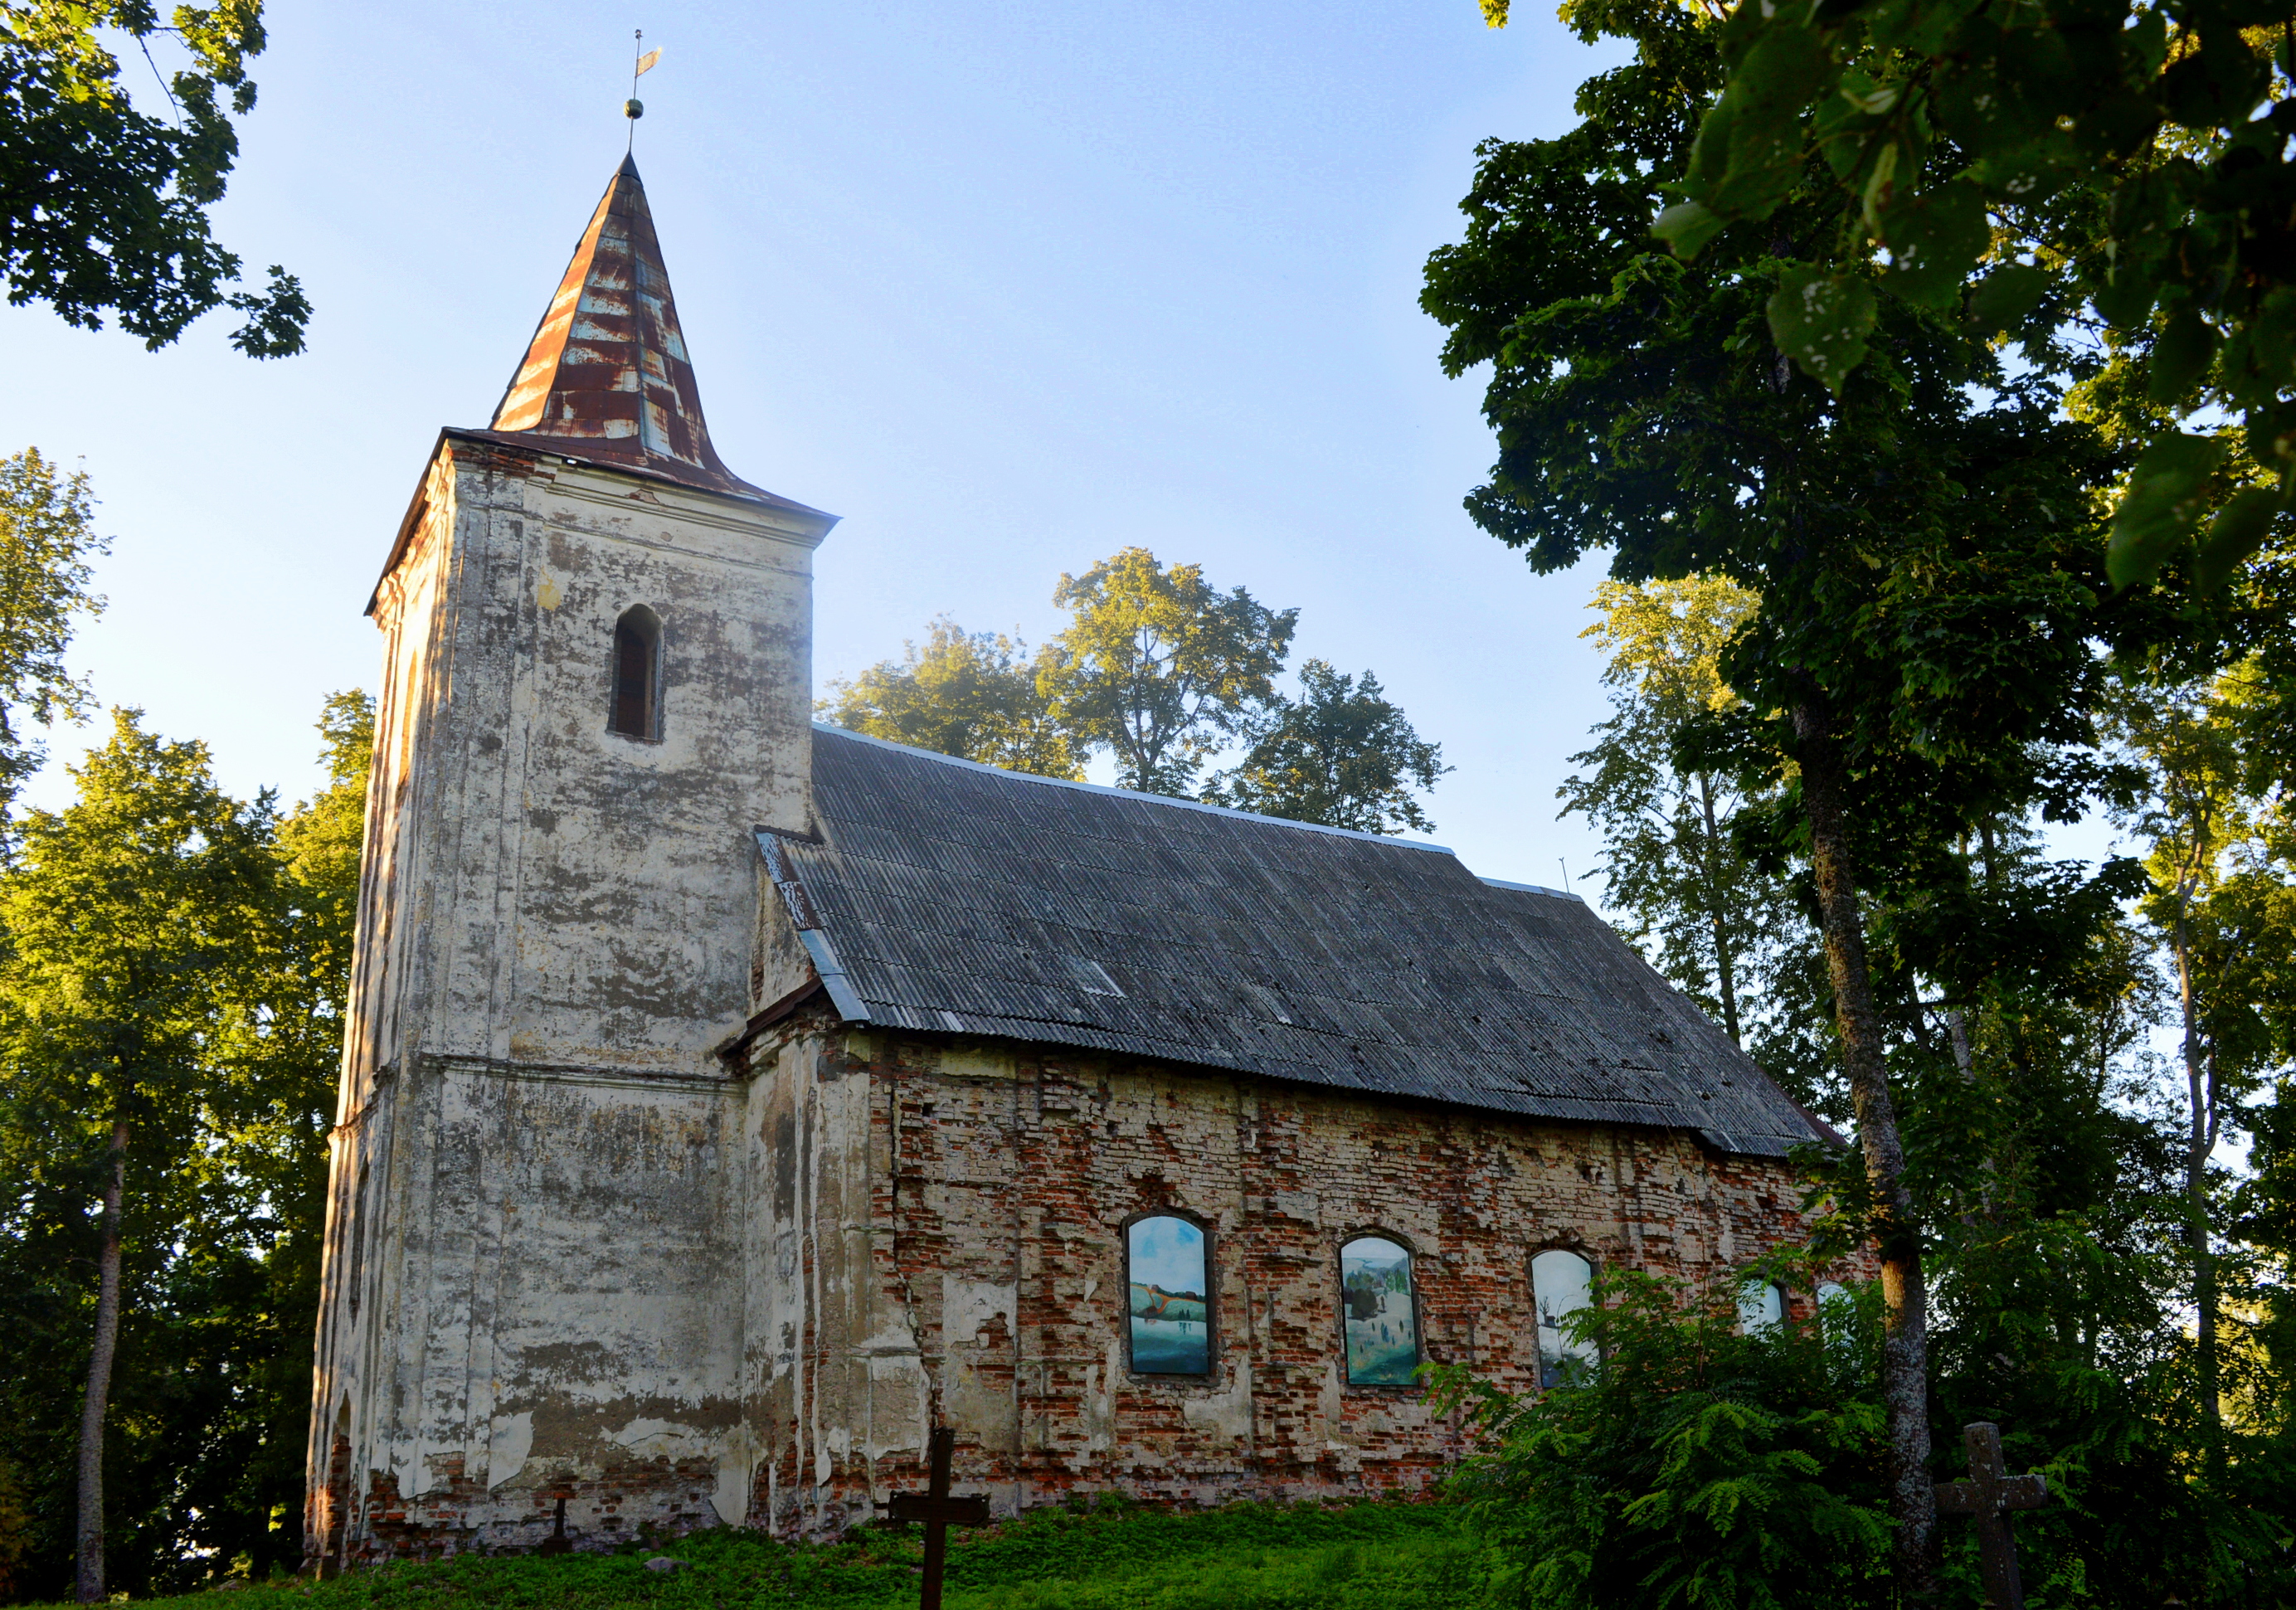 Berkenele (Birkeneli) Lutheran Church